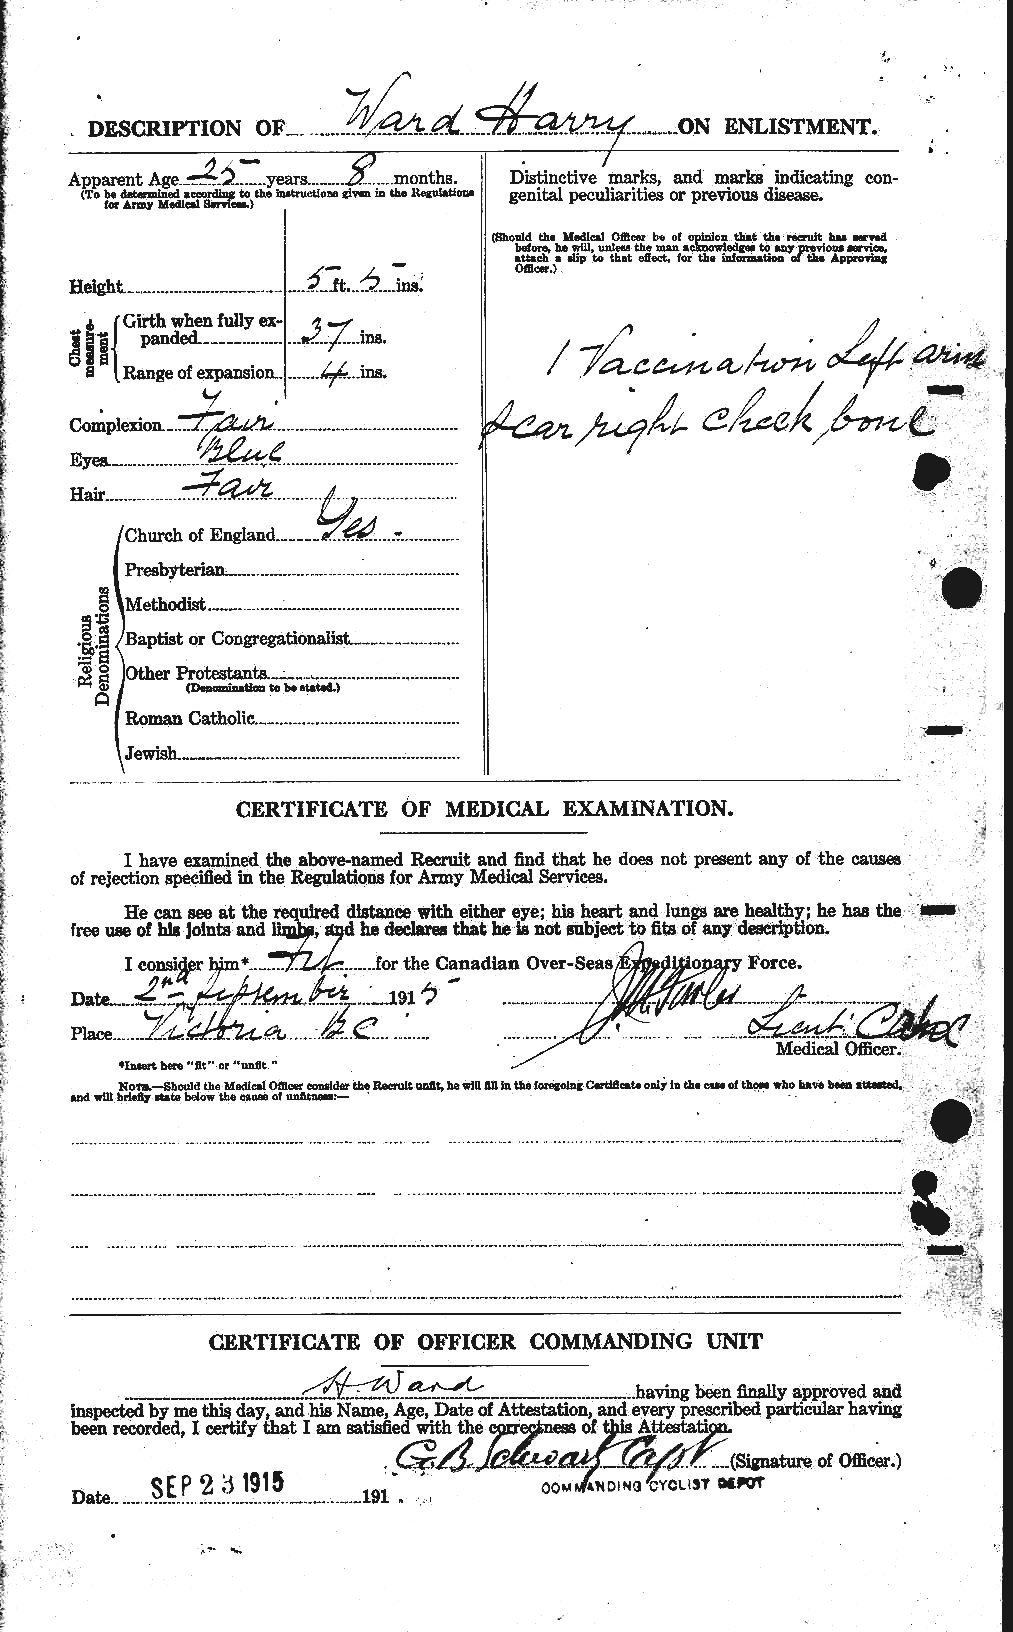 Dossiers du Personnel de la Première Guerre mondiale - CEC 657808b